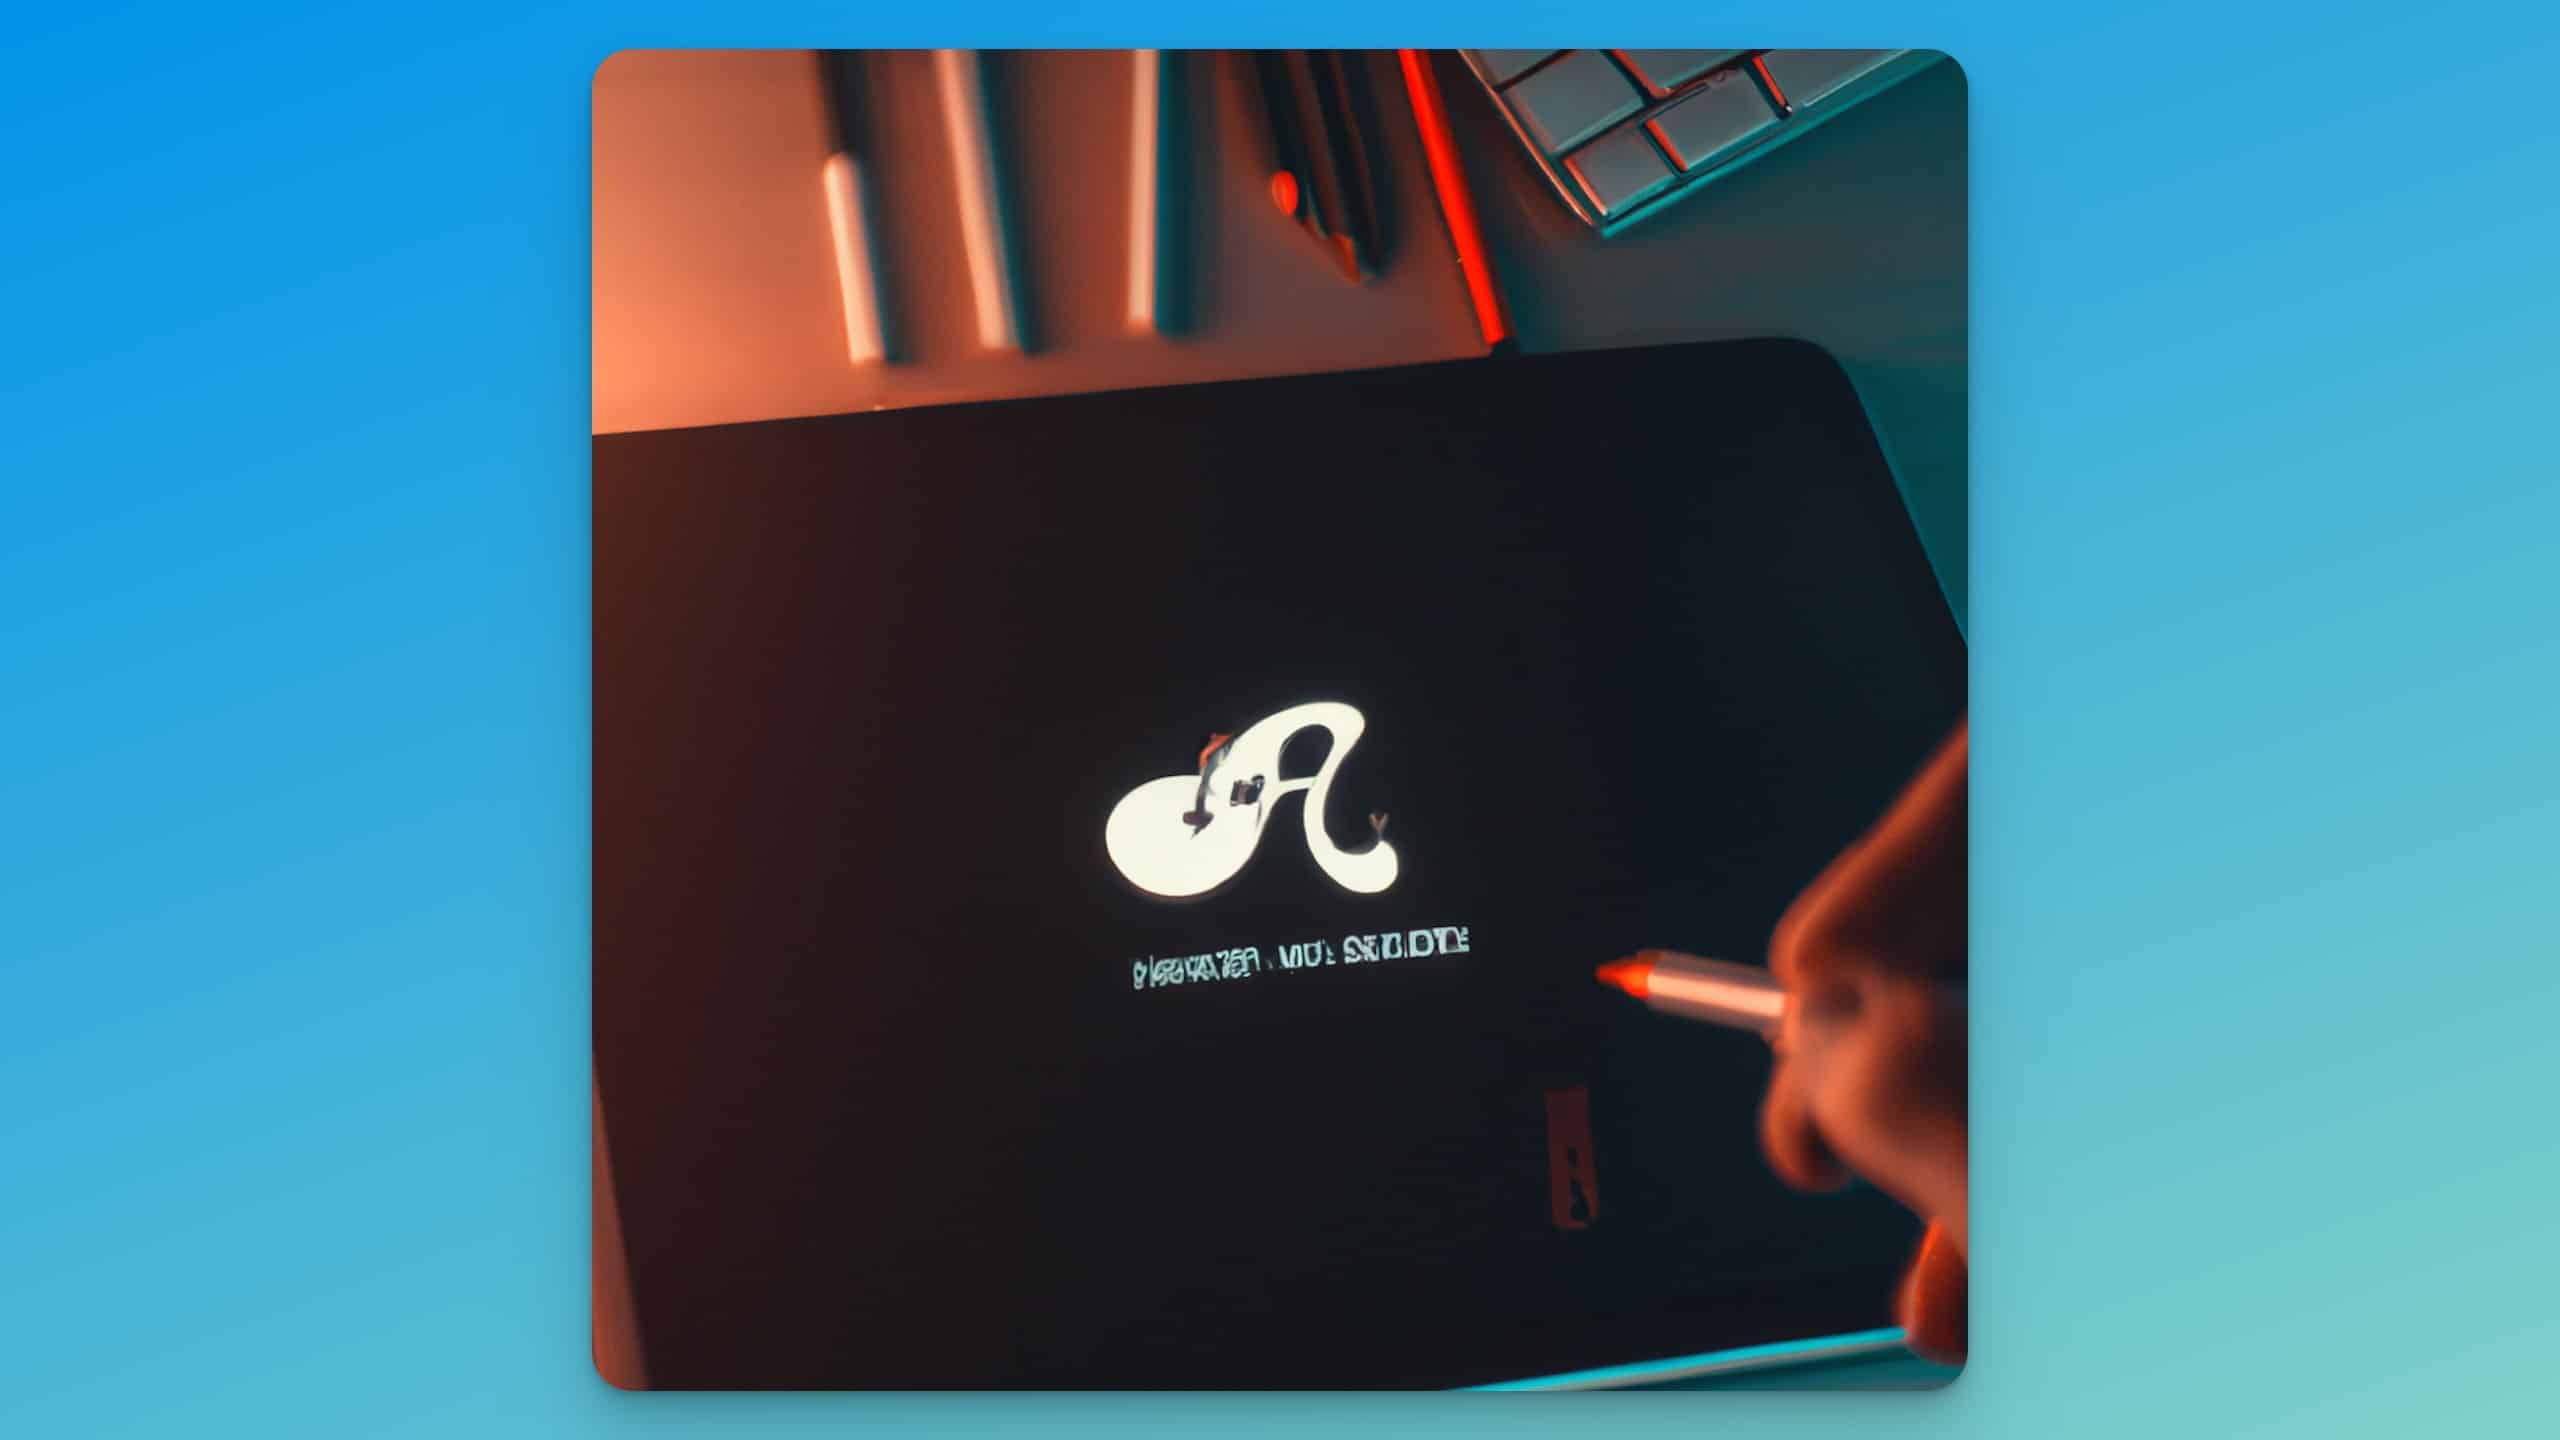 Eine Illustration von einem iPad auf dem ein Logo gezeichnet wird